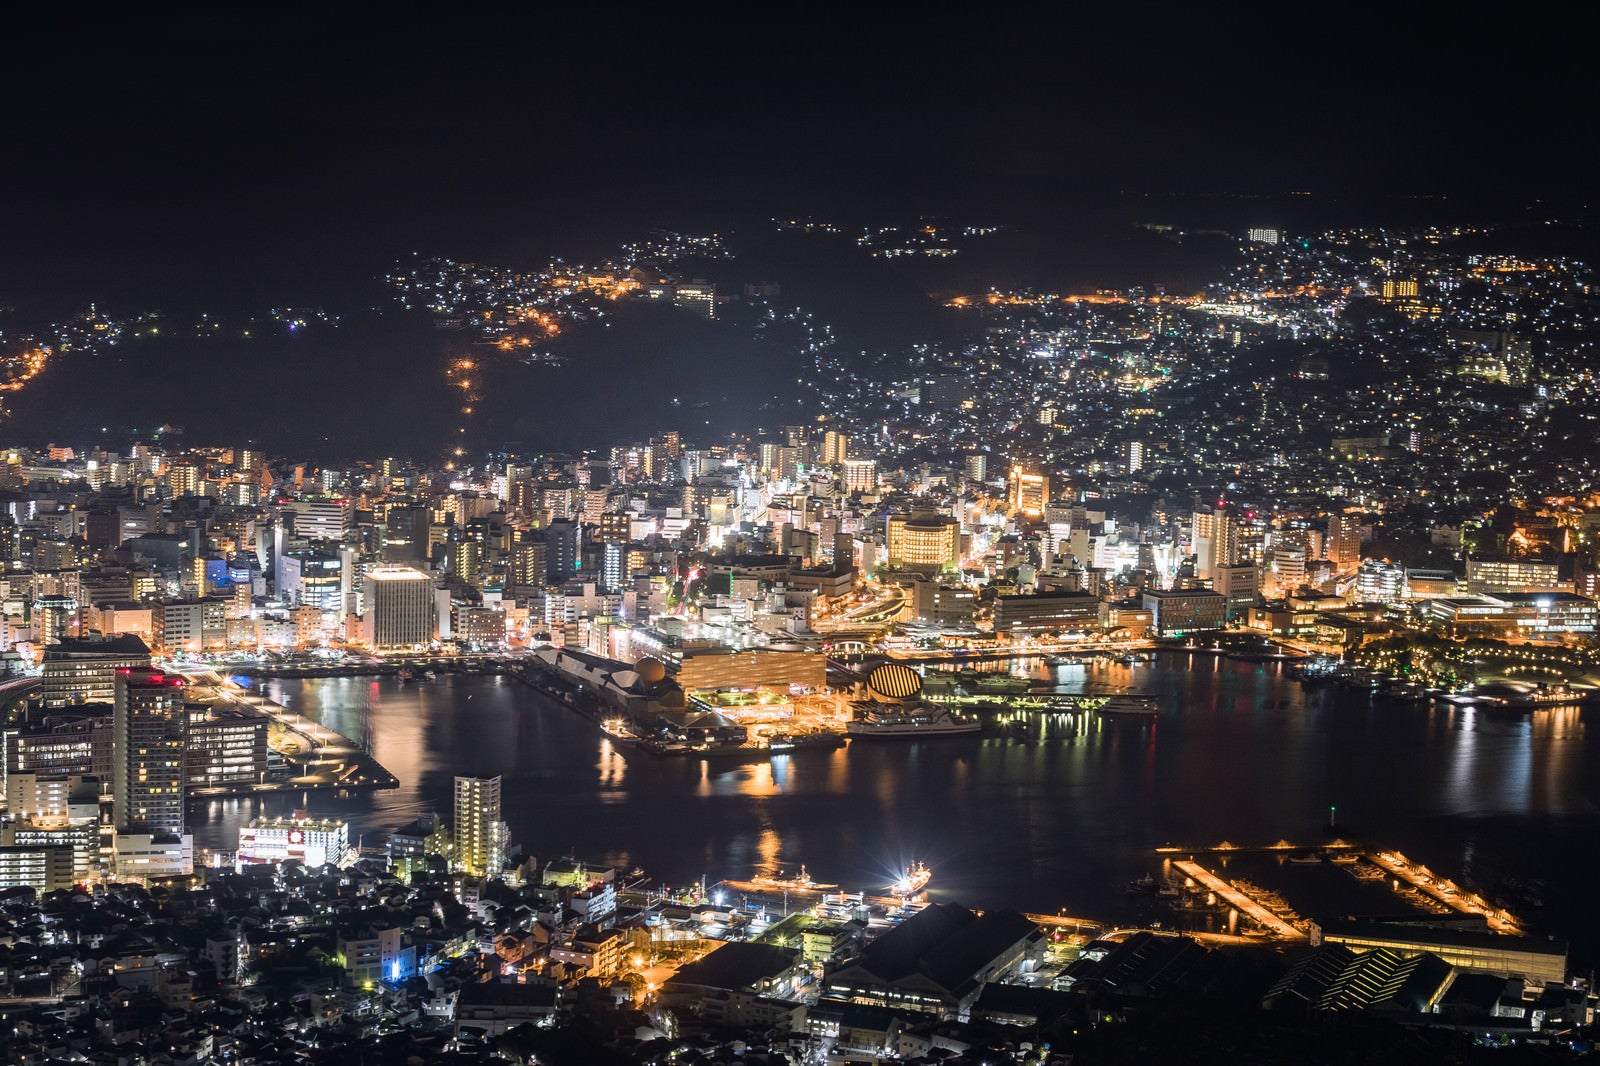 「稲佐山山頂展望台からの夜景（世界新三大夜景）」の写真